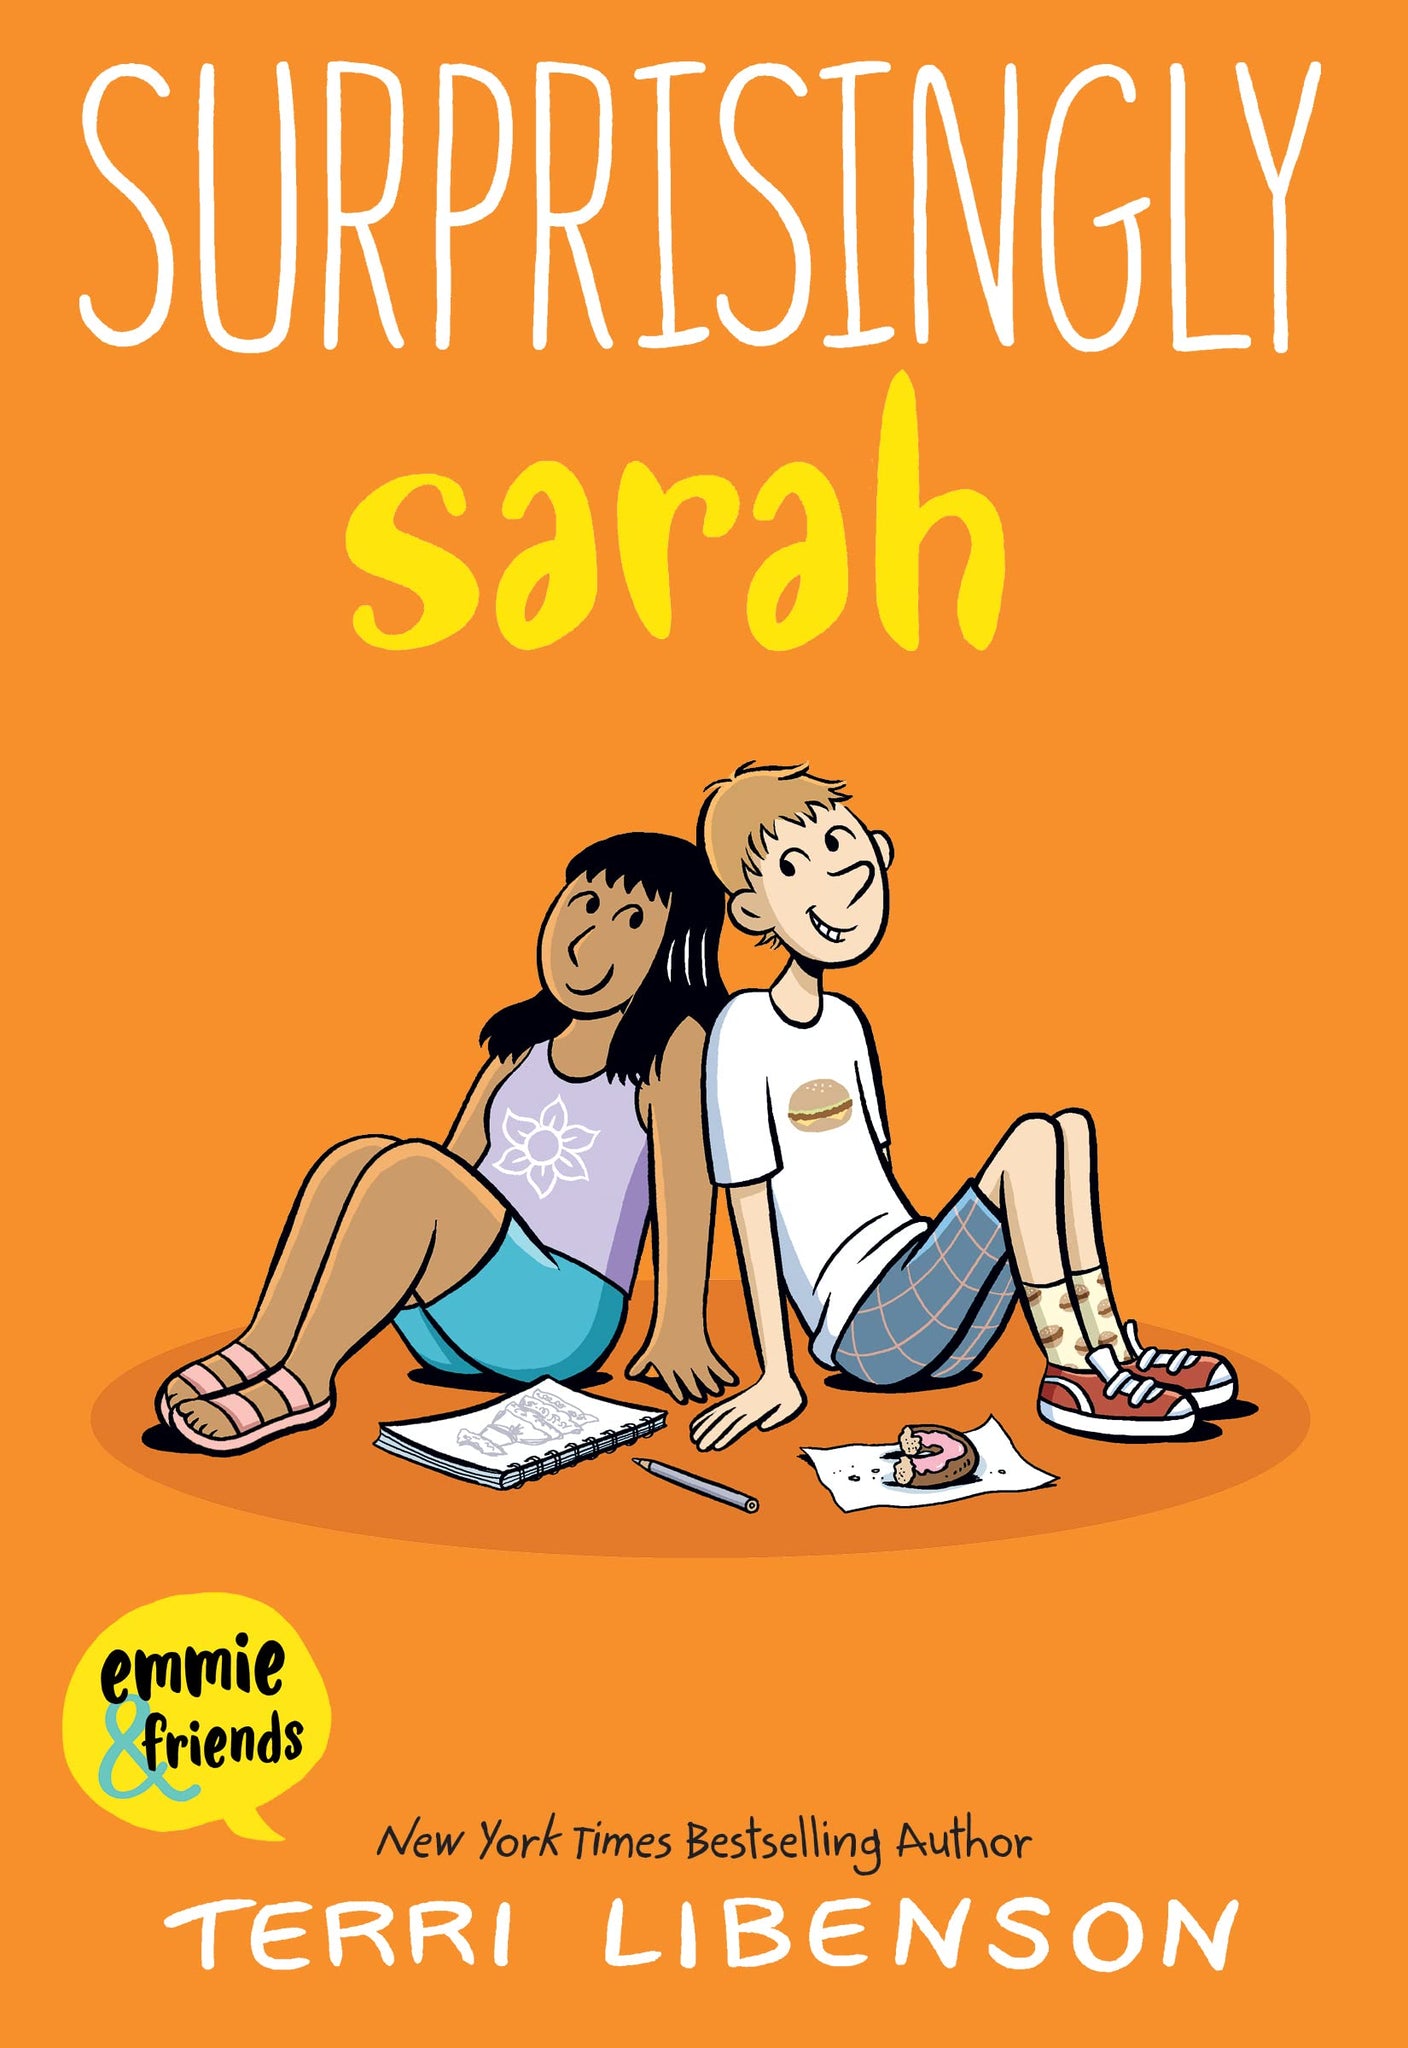 Emmie & Friends #7 Surprisingly Sarah - Paperback